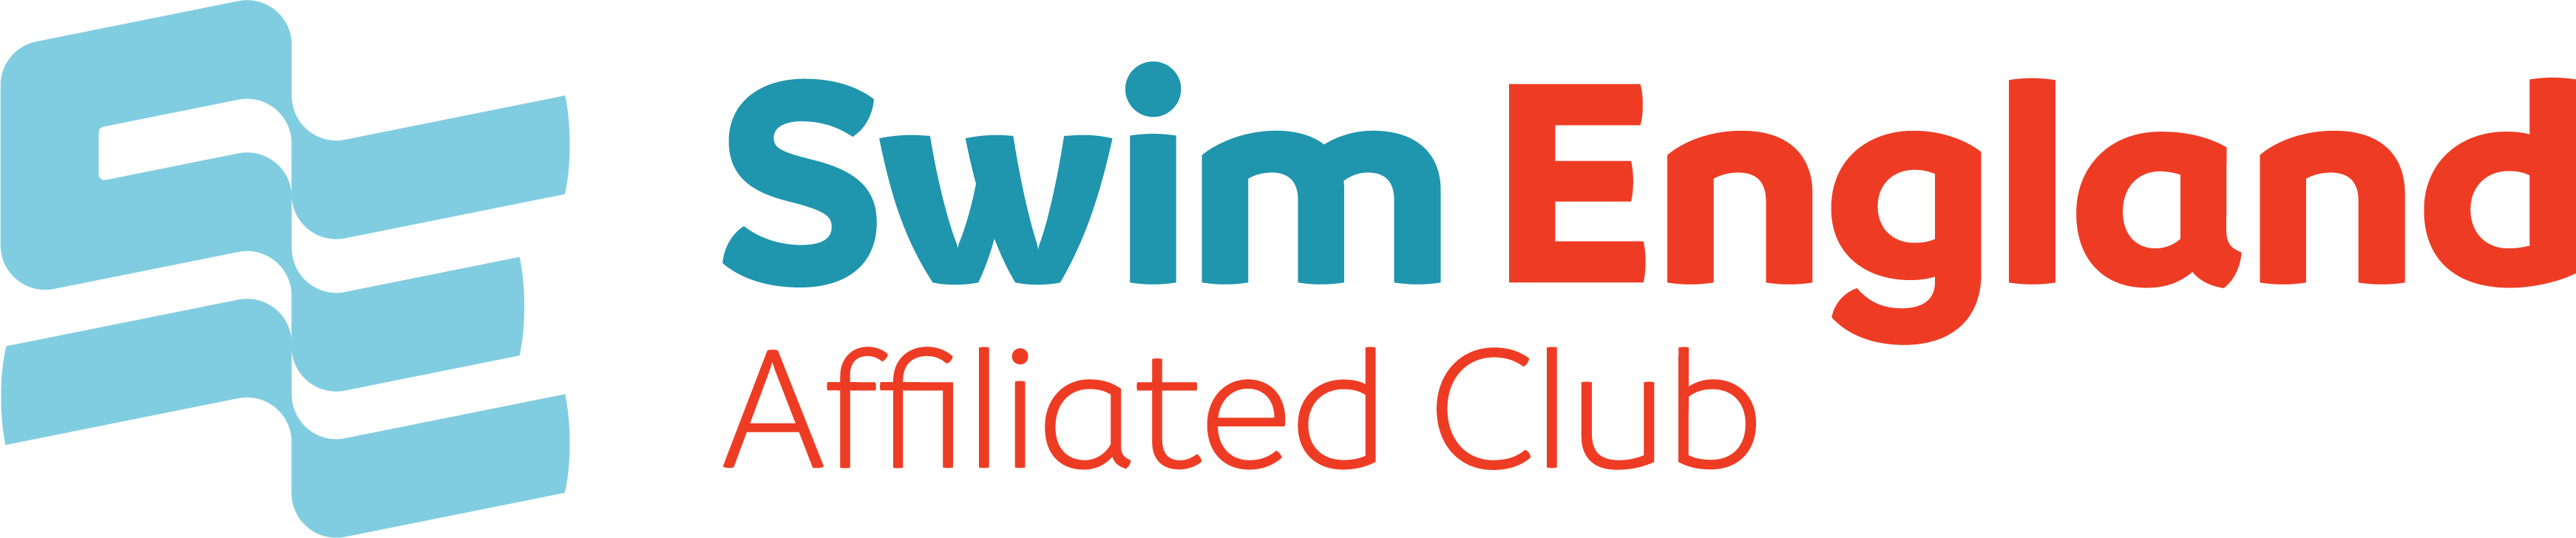 Swim England Affiliated Club logo with link to website